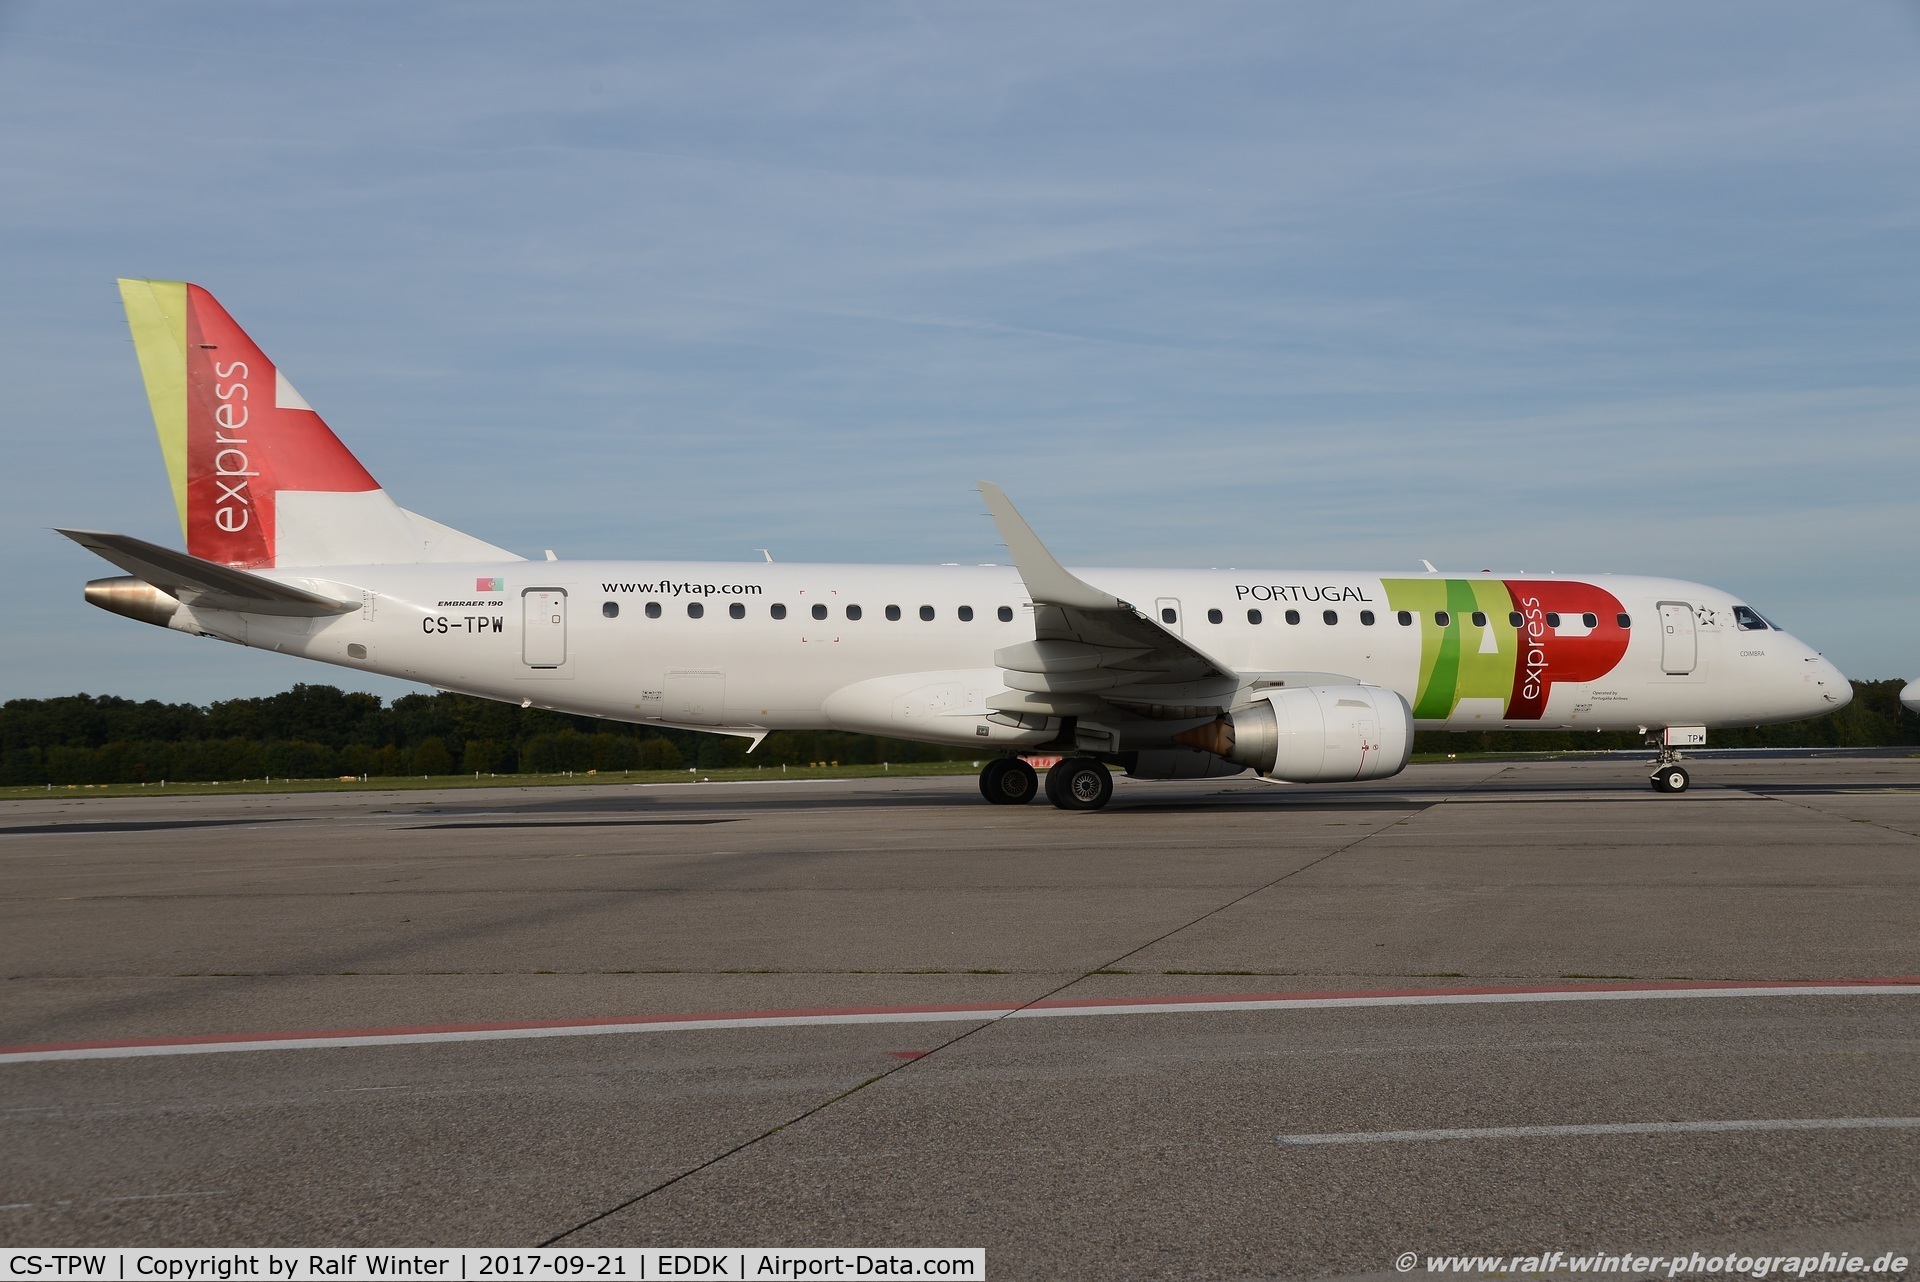 CS-TPW, 2012 Embraer 190LR (ERJ-190-100LR) C/N 19000550, Embraer ERJ-190LR 190-100LR - NI PGA Portugalia opf TAP Express - 19000550 - CS-TPW - 21.09.2017 - CGN